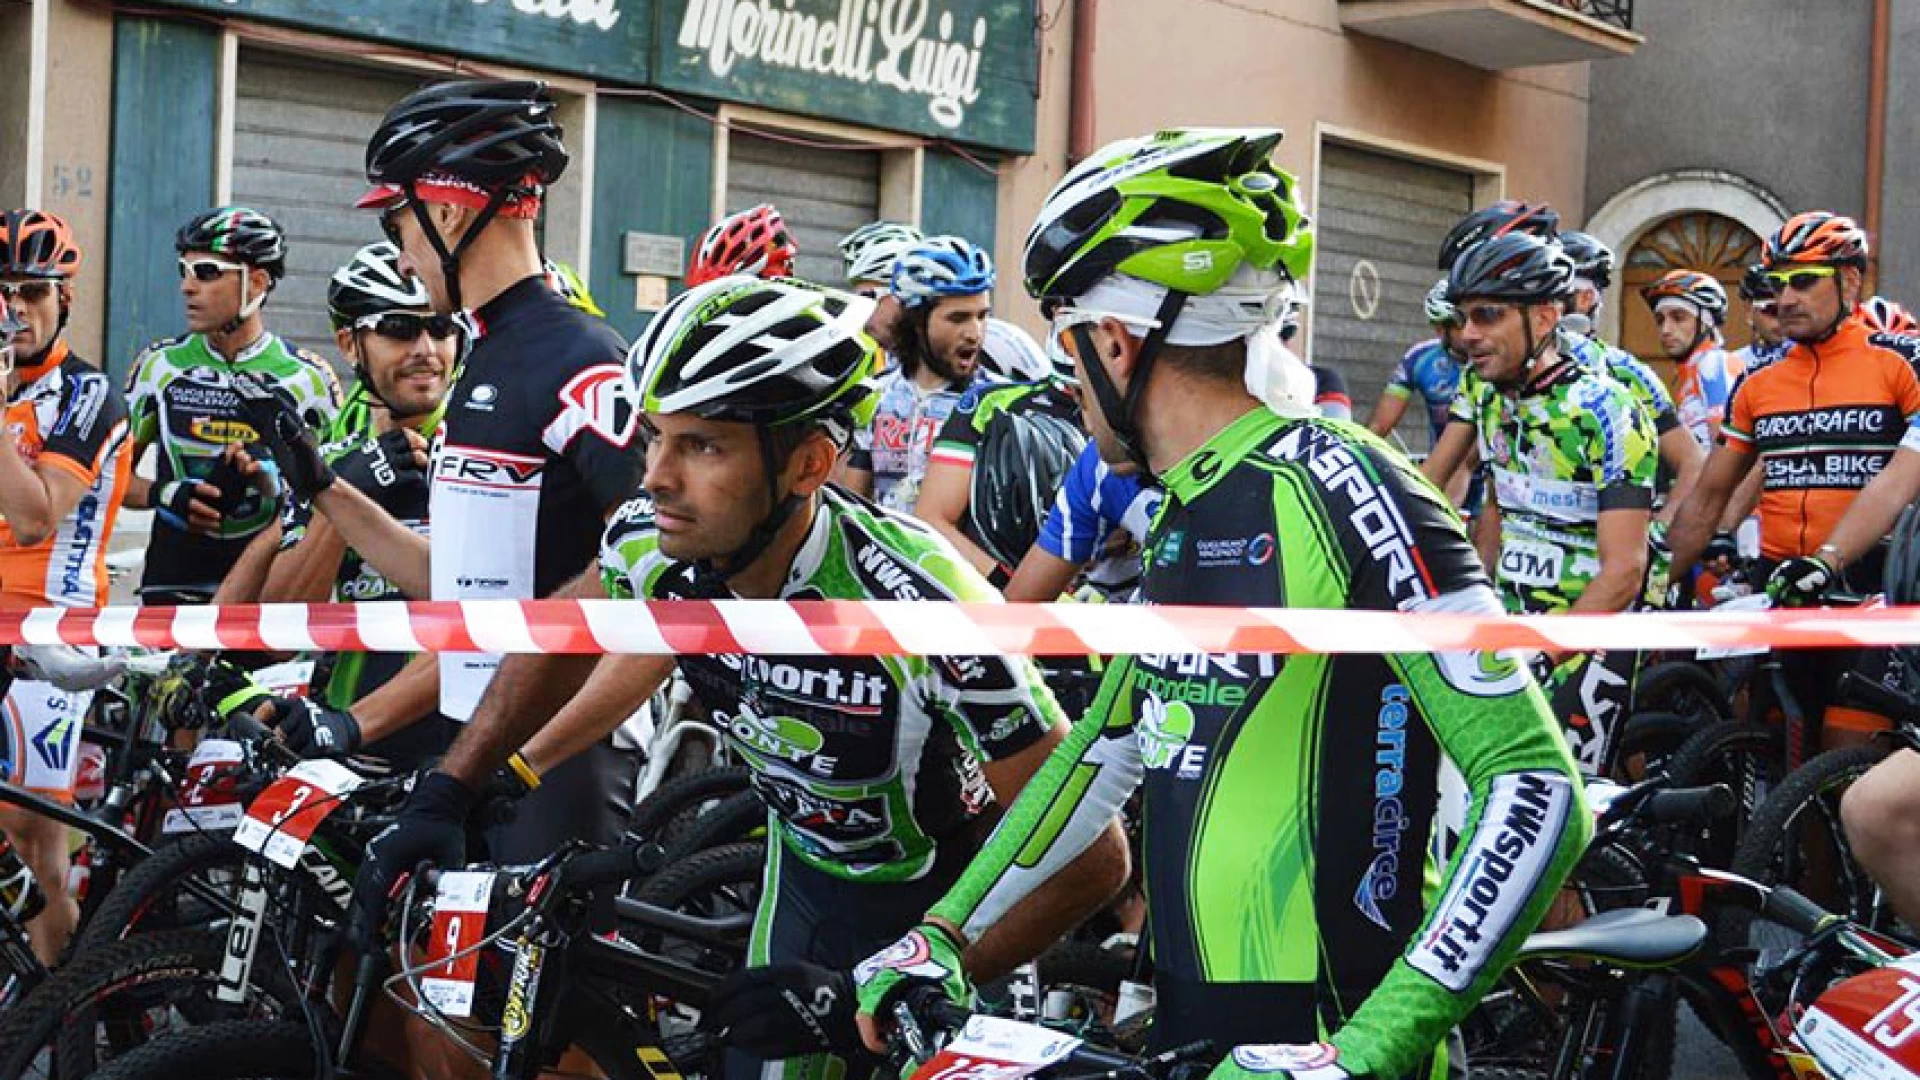 Filignano: domenica 23 luglio l’appuntamento con la Mainarde Bike Race. Previsti numeri record per la quarta edizione della gara di mountain bike.